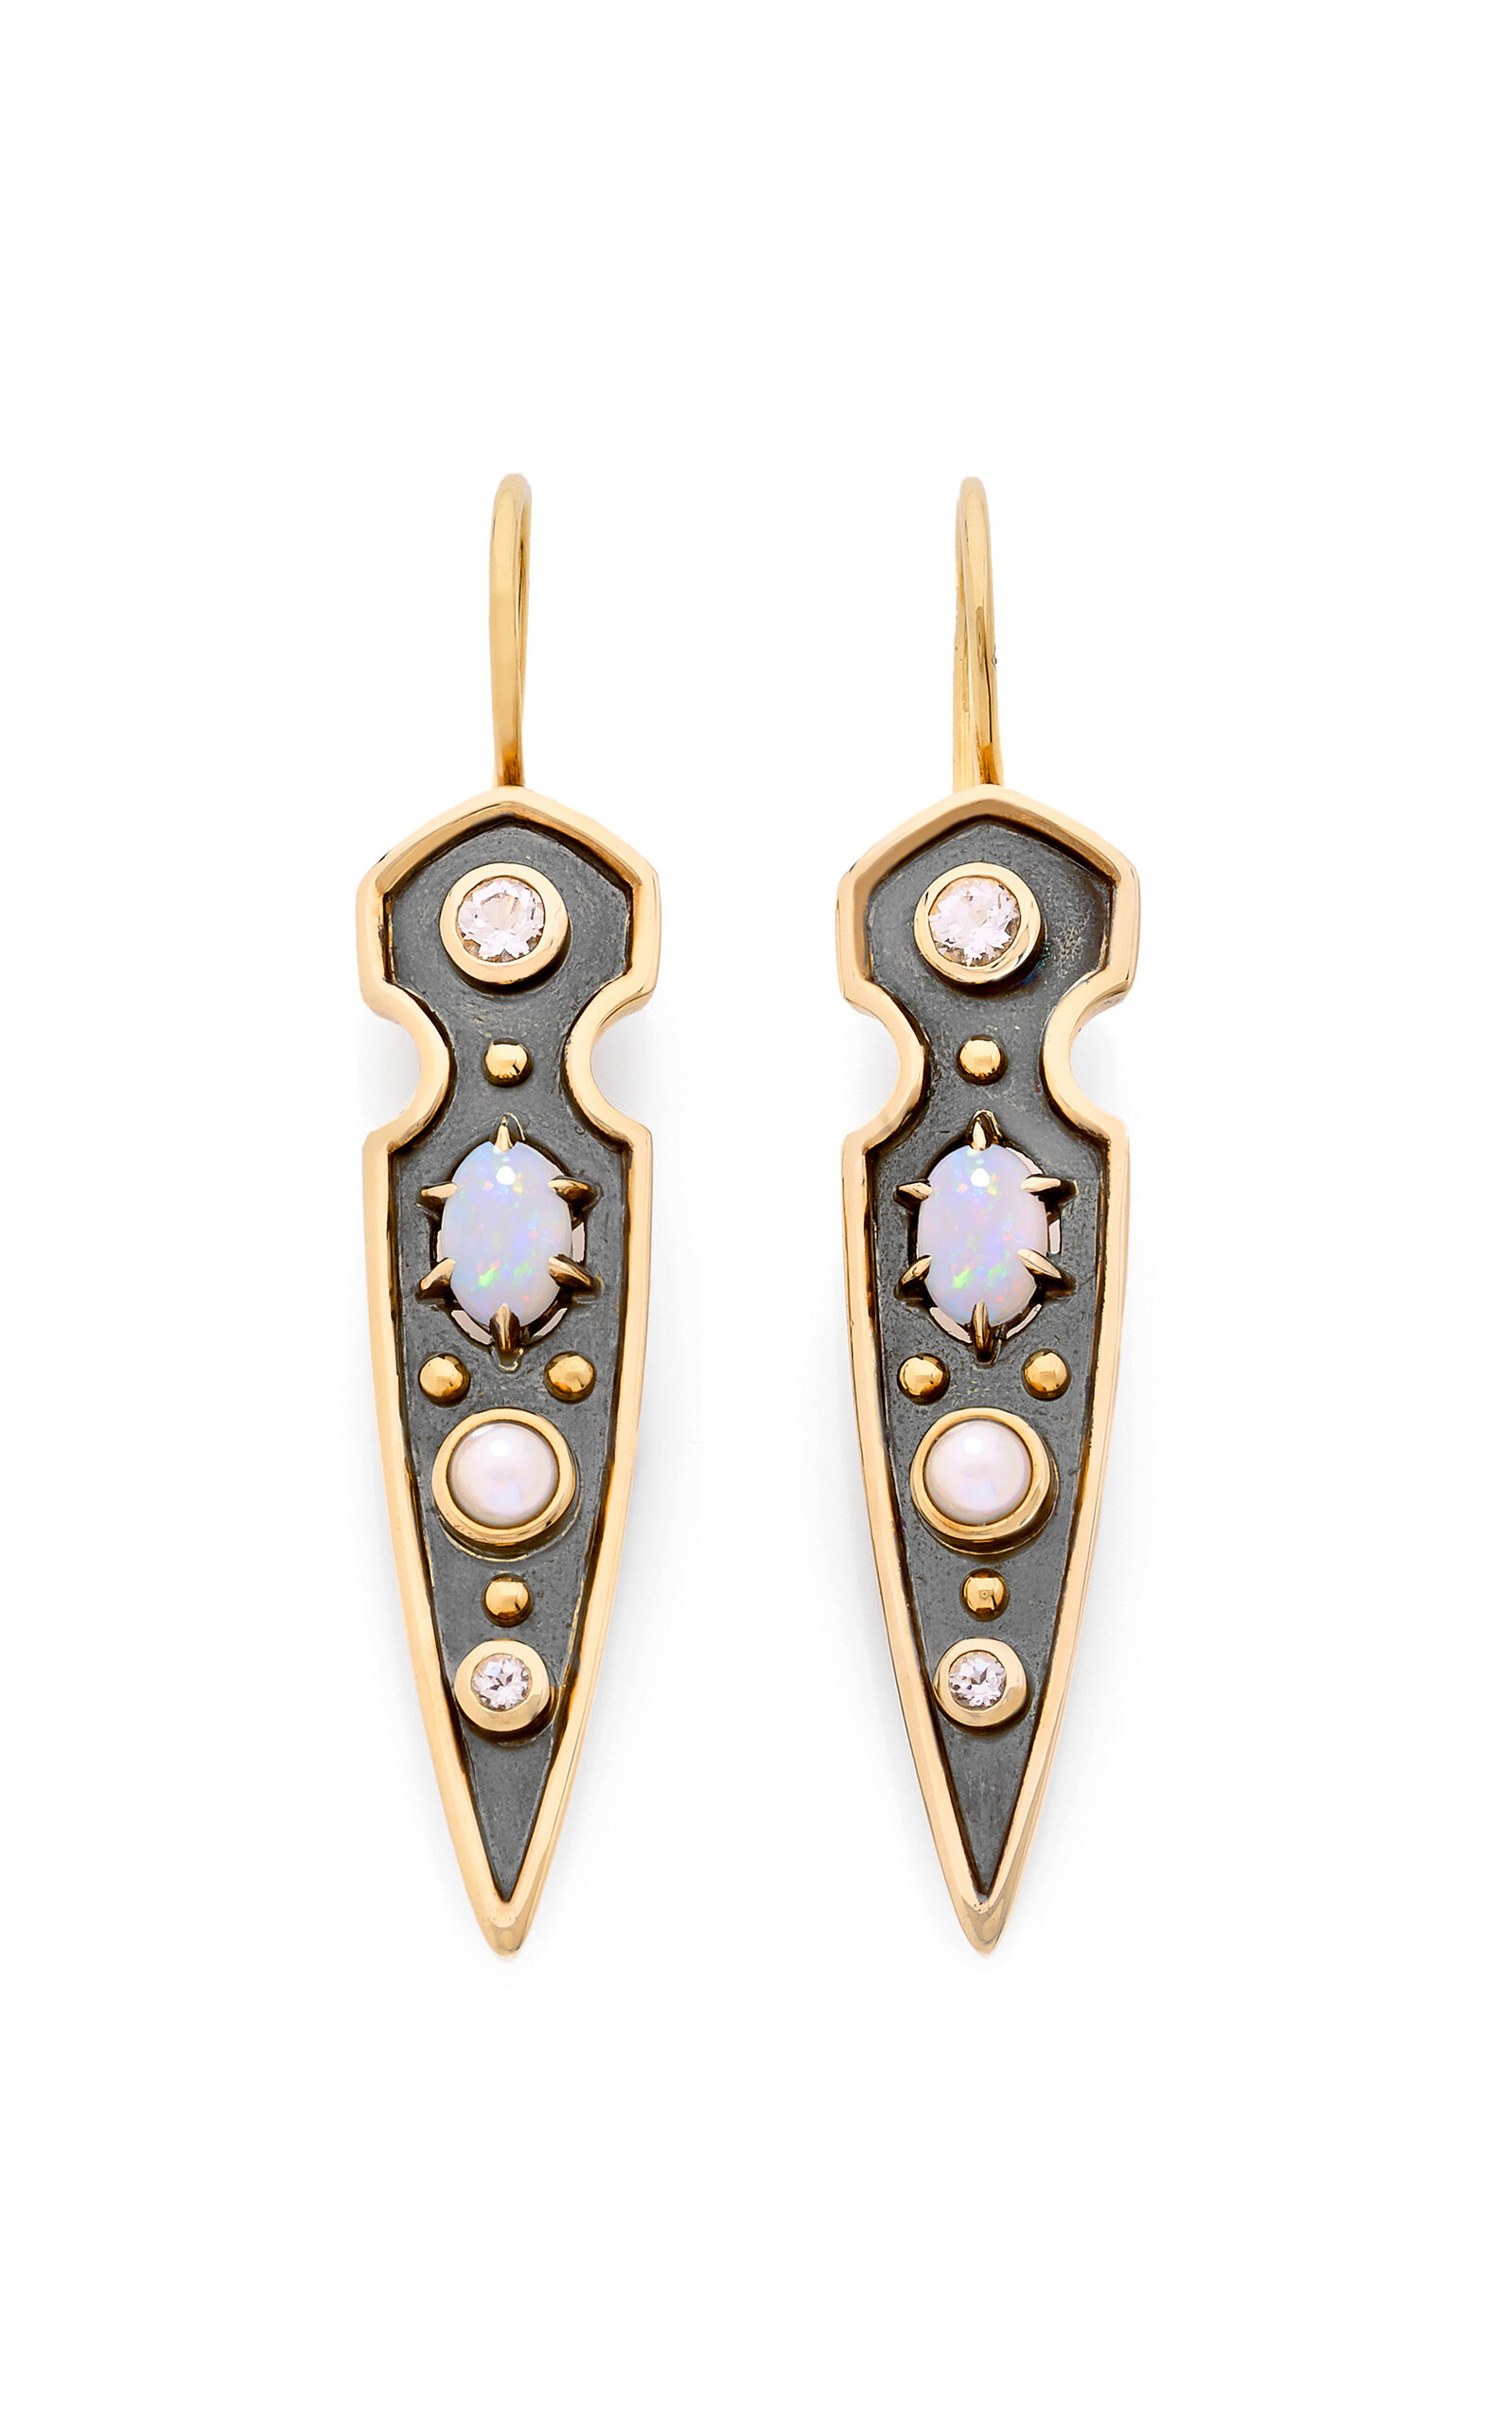 Elie Top Women's Stylet 18K Yellow Gold; Distressed Silver Opal Earrings